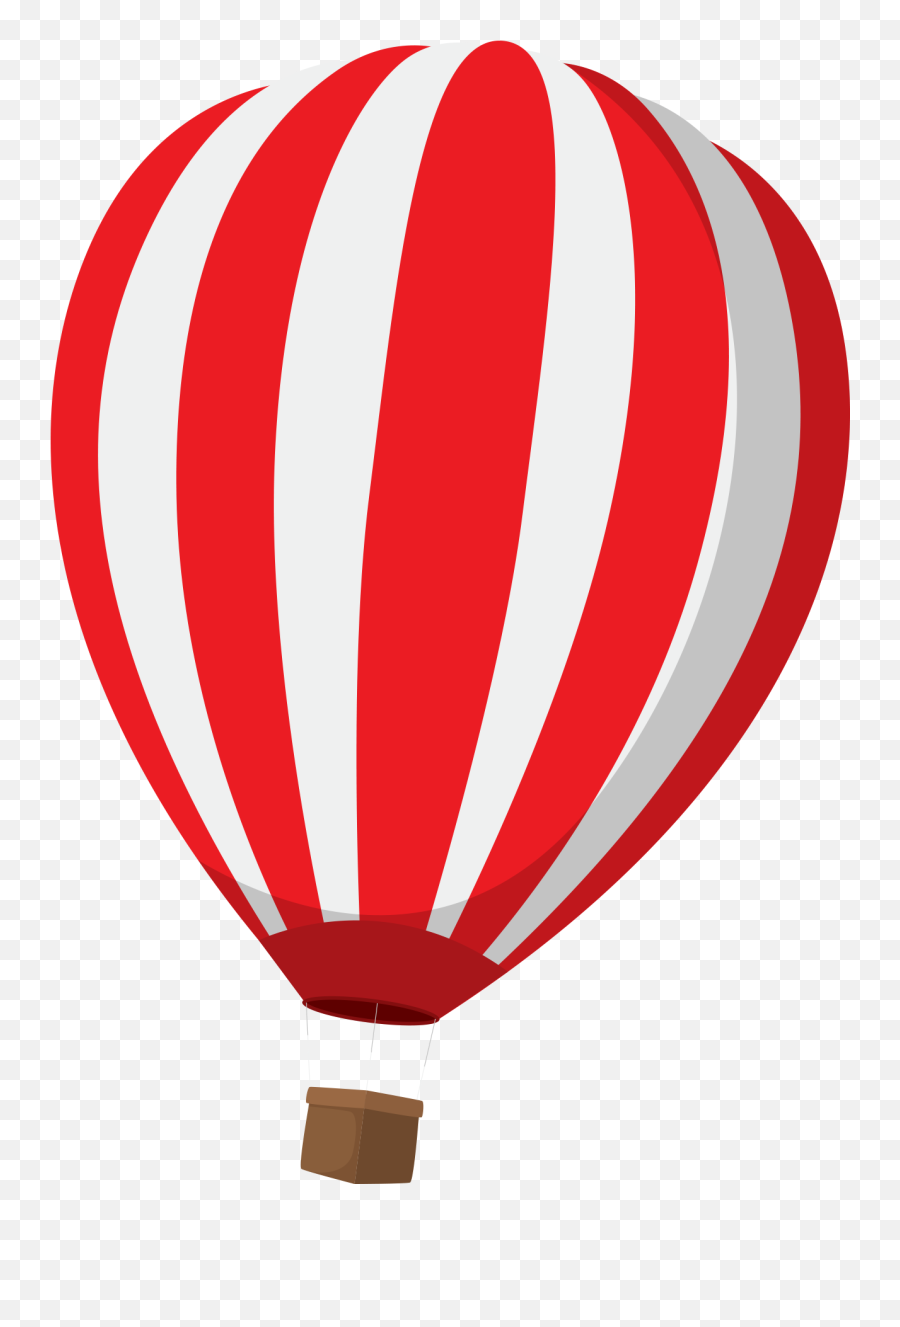 Hot Air Balloon Clipart Png Image Free - Hot Air Balloon Clipart Red Emoji,Balloon Clipart